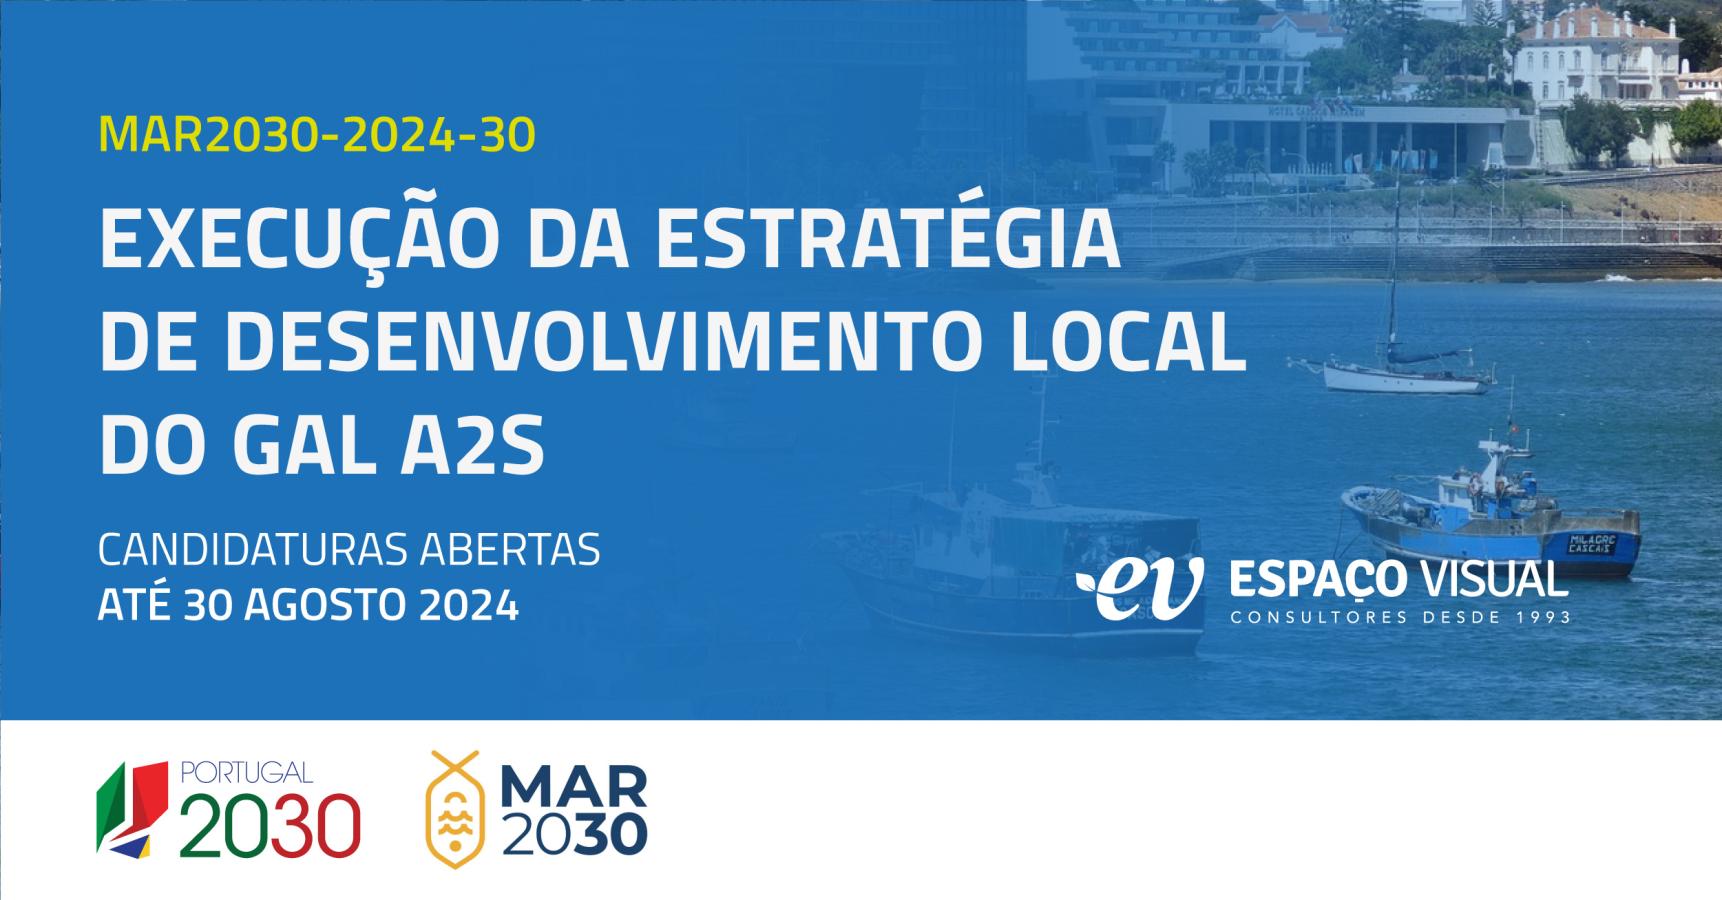 Medida de Apoio | Execução da Estratégia de desenvolvimento local (EDL) do GAL A2S Mar 2030 | Espaço Visual